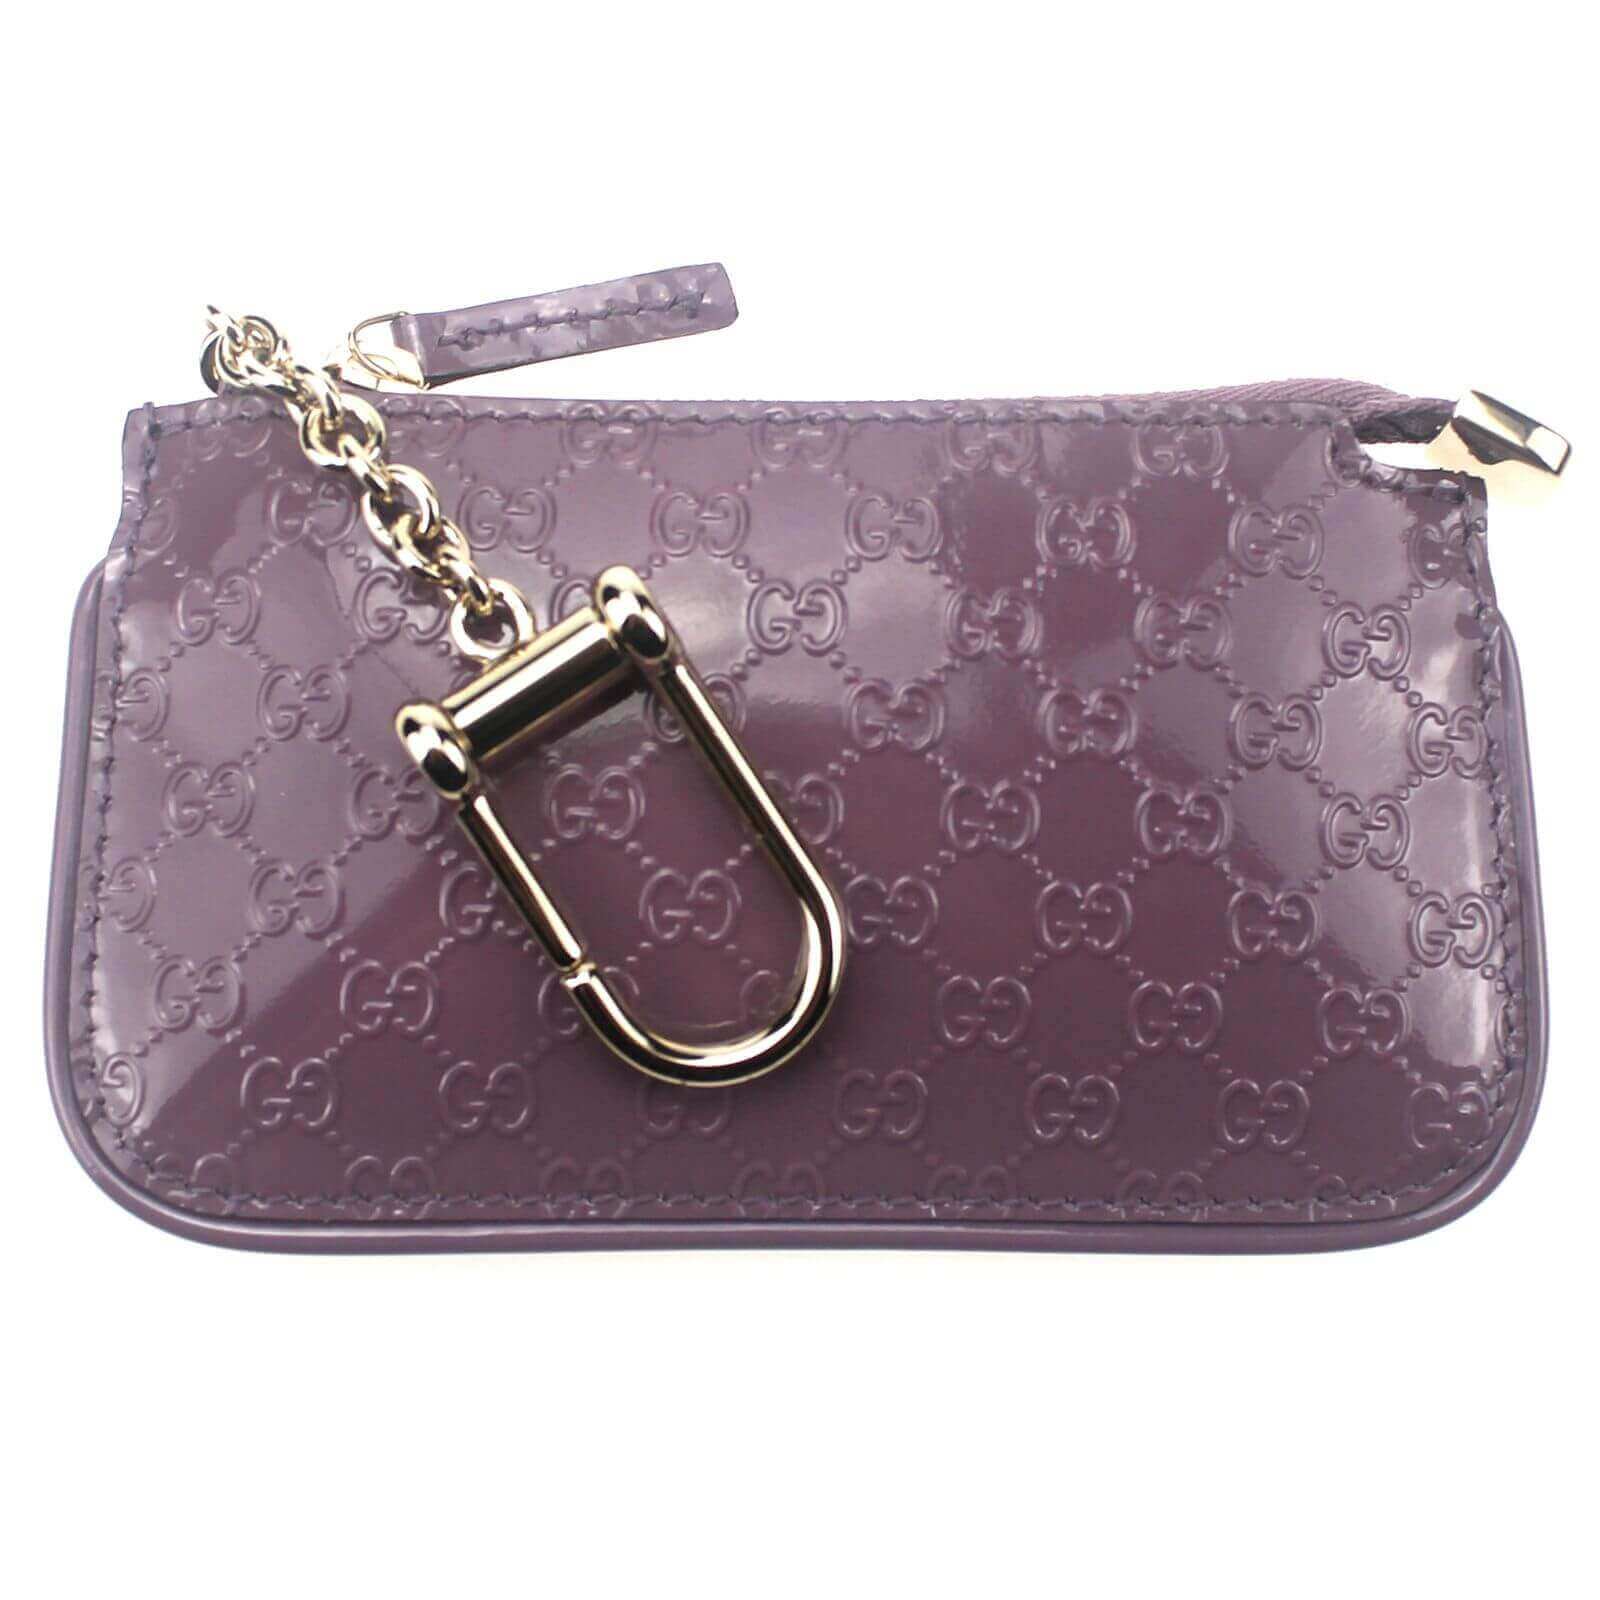 Gucci Guccissima leather clip key case